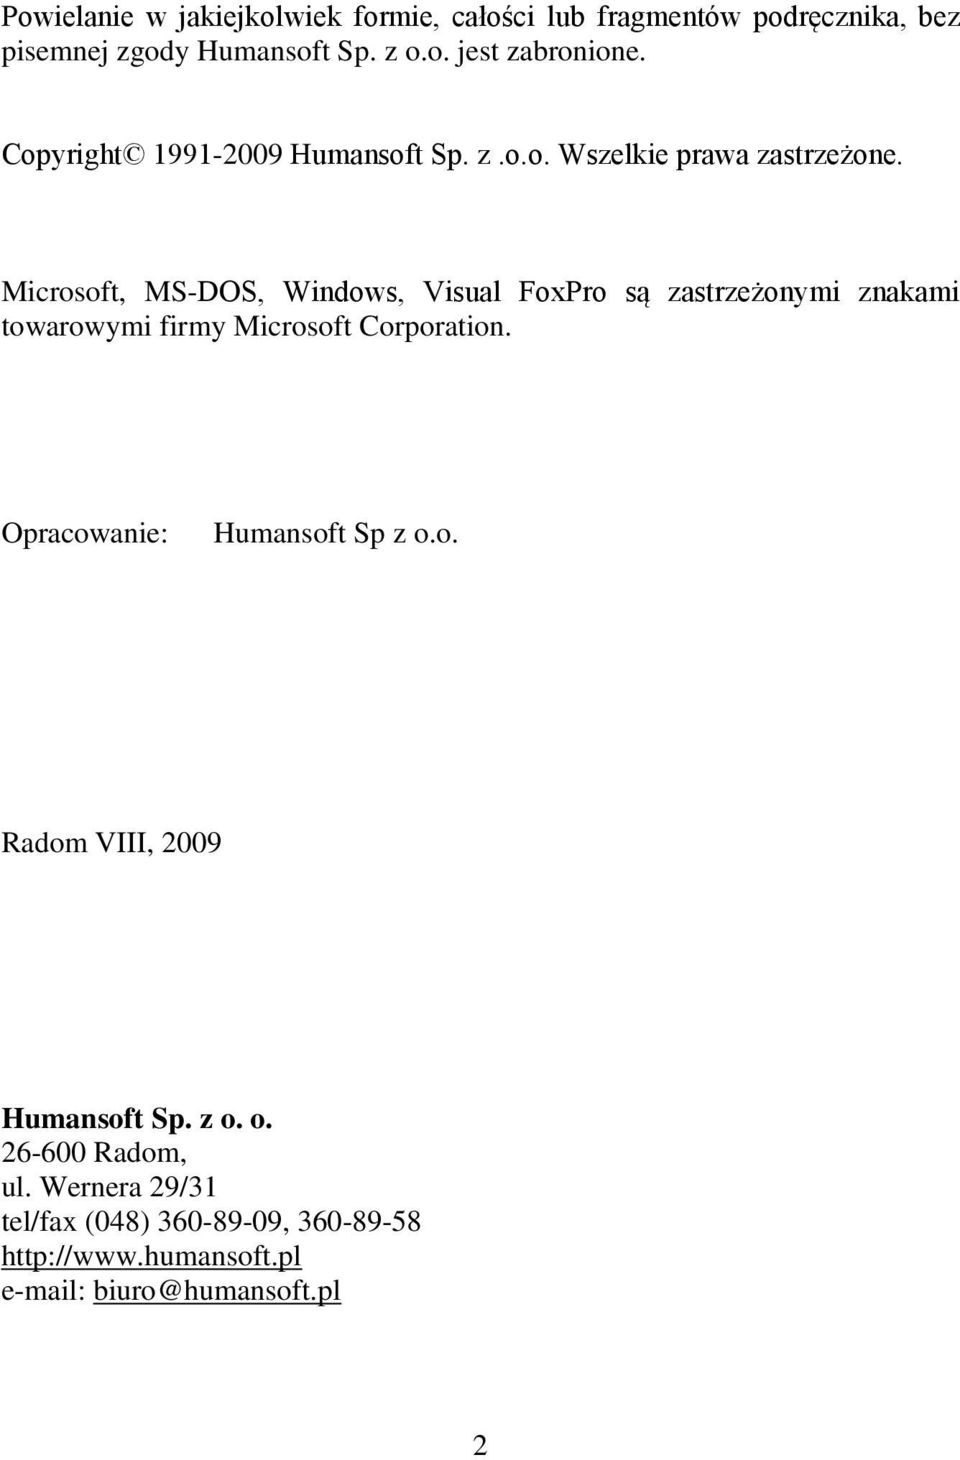 Microsoft, MS-DOS, Windows, Visual FoxPro są zastrzeżonymi znakami towarowymi firmy Microsoft Corporation.